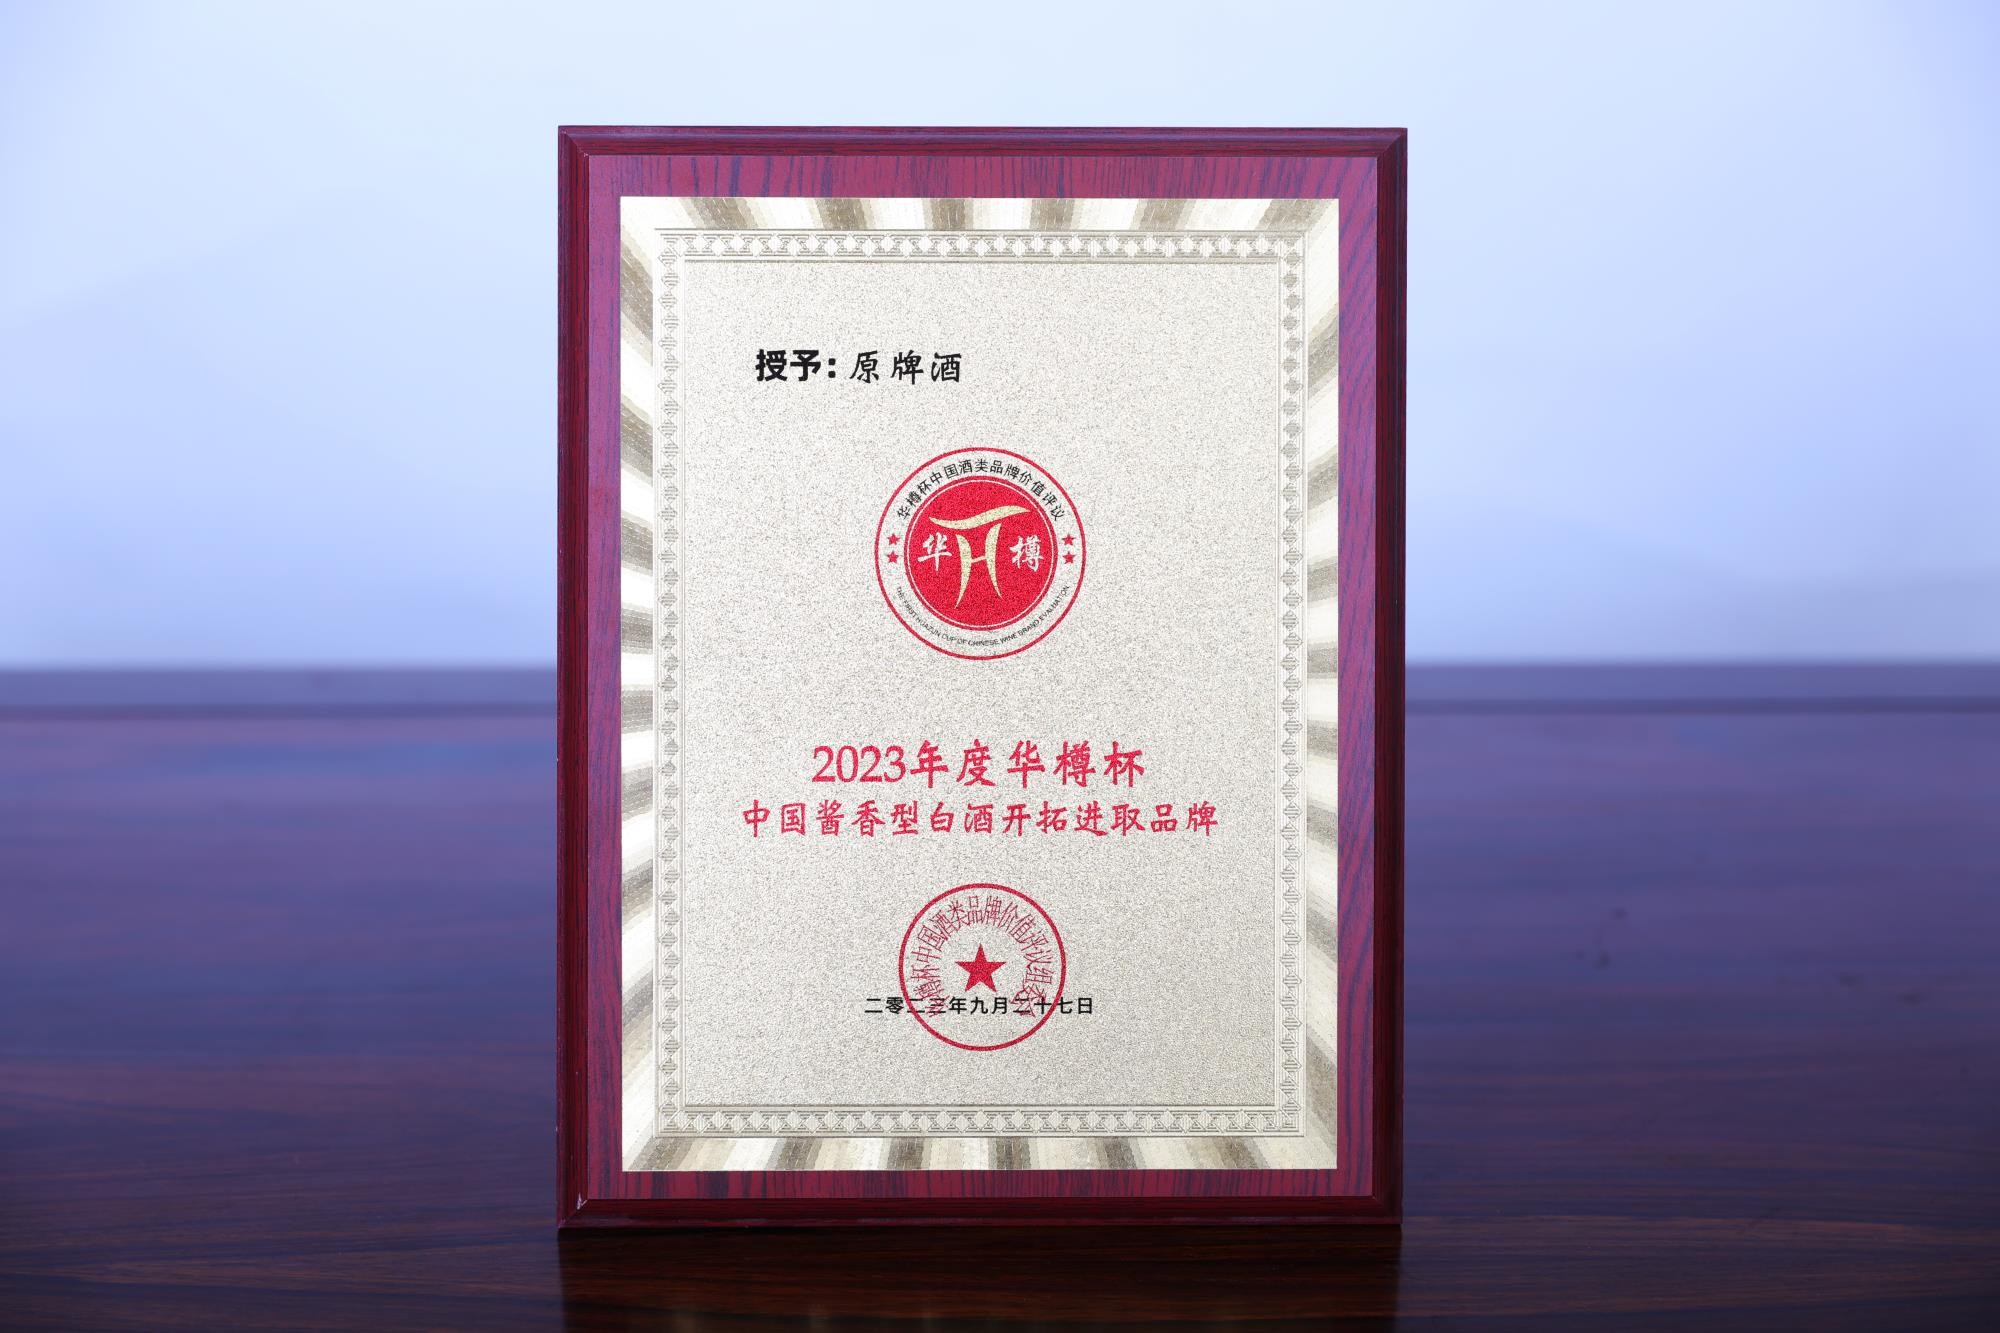 原牌酒-2023年度華樽杯中國醬香型白酒開拓進取品牌